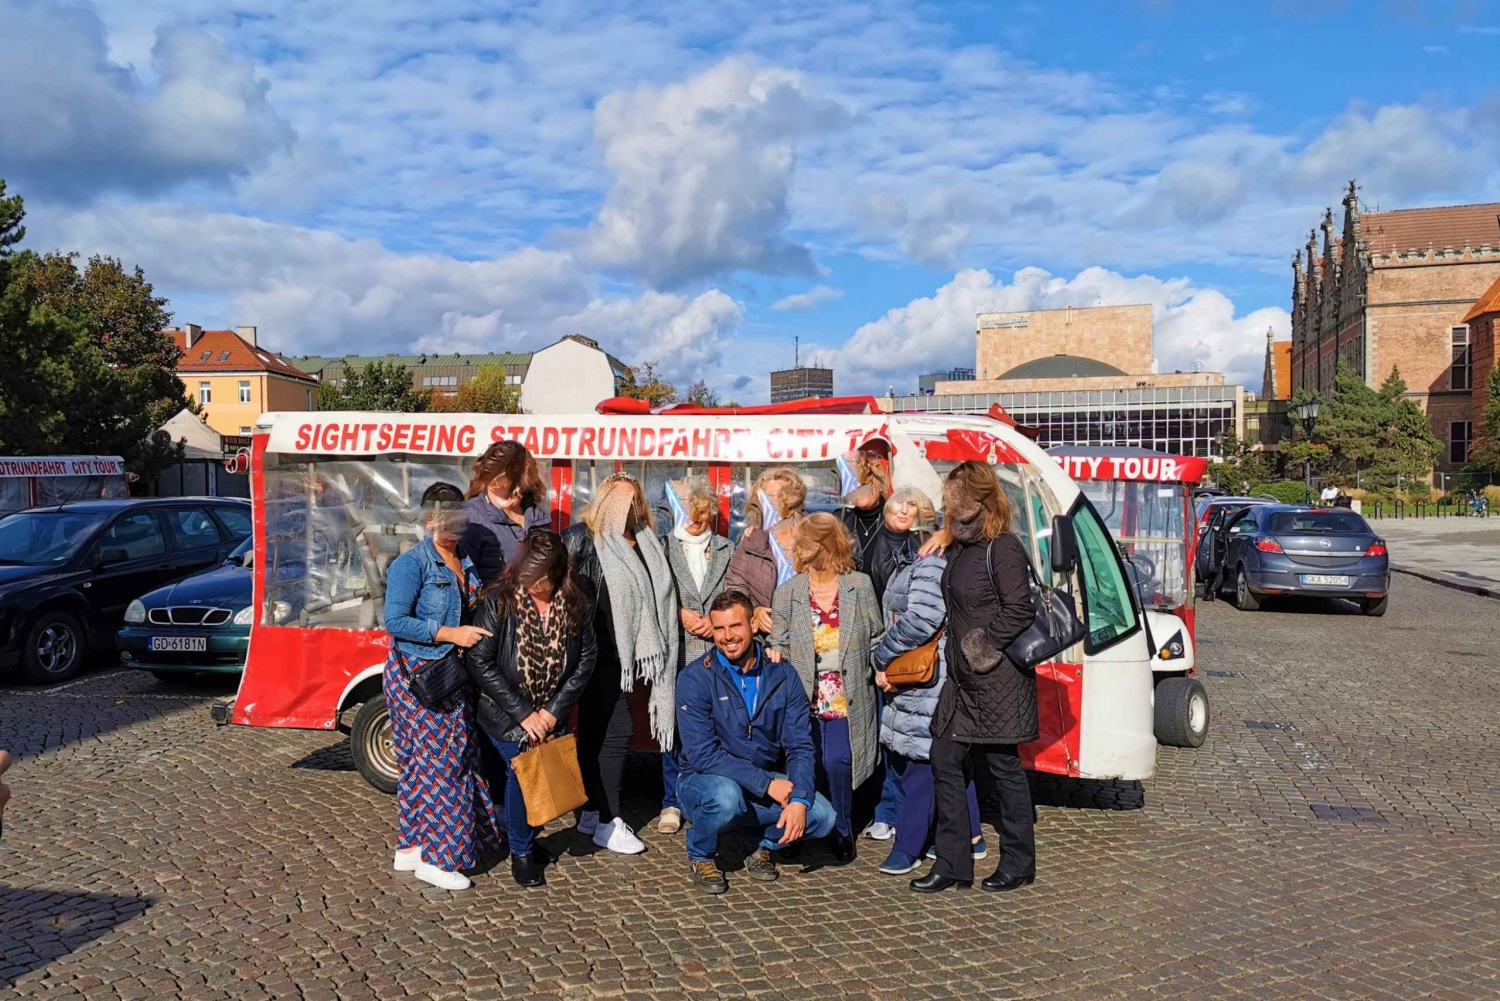 Gdańsk: Bytur med elektrisk golfvogn